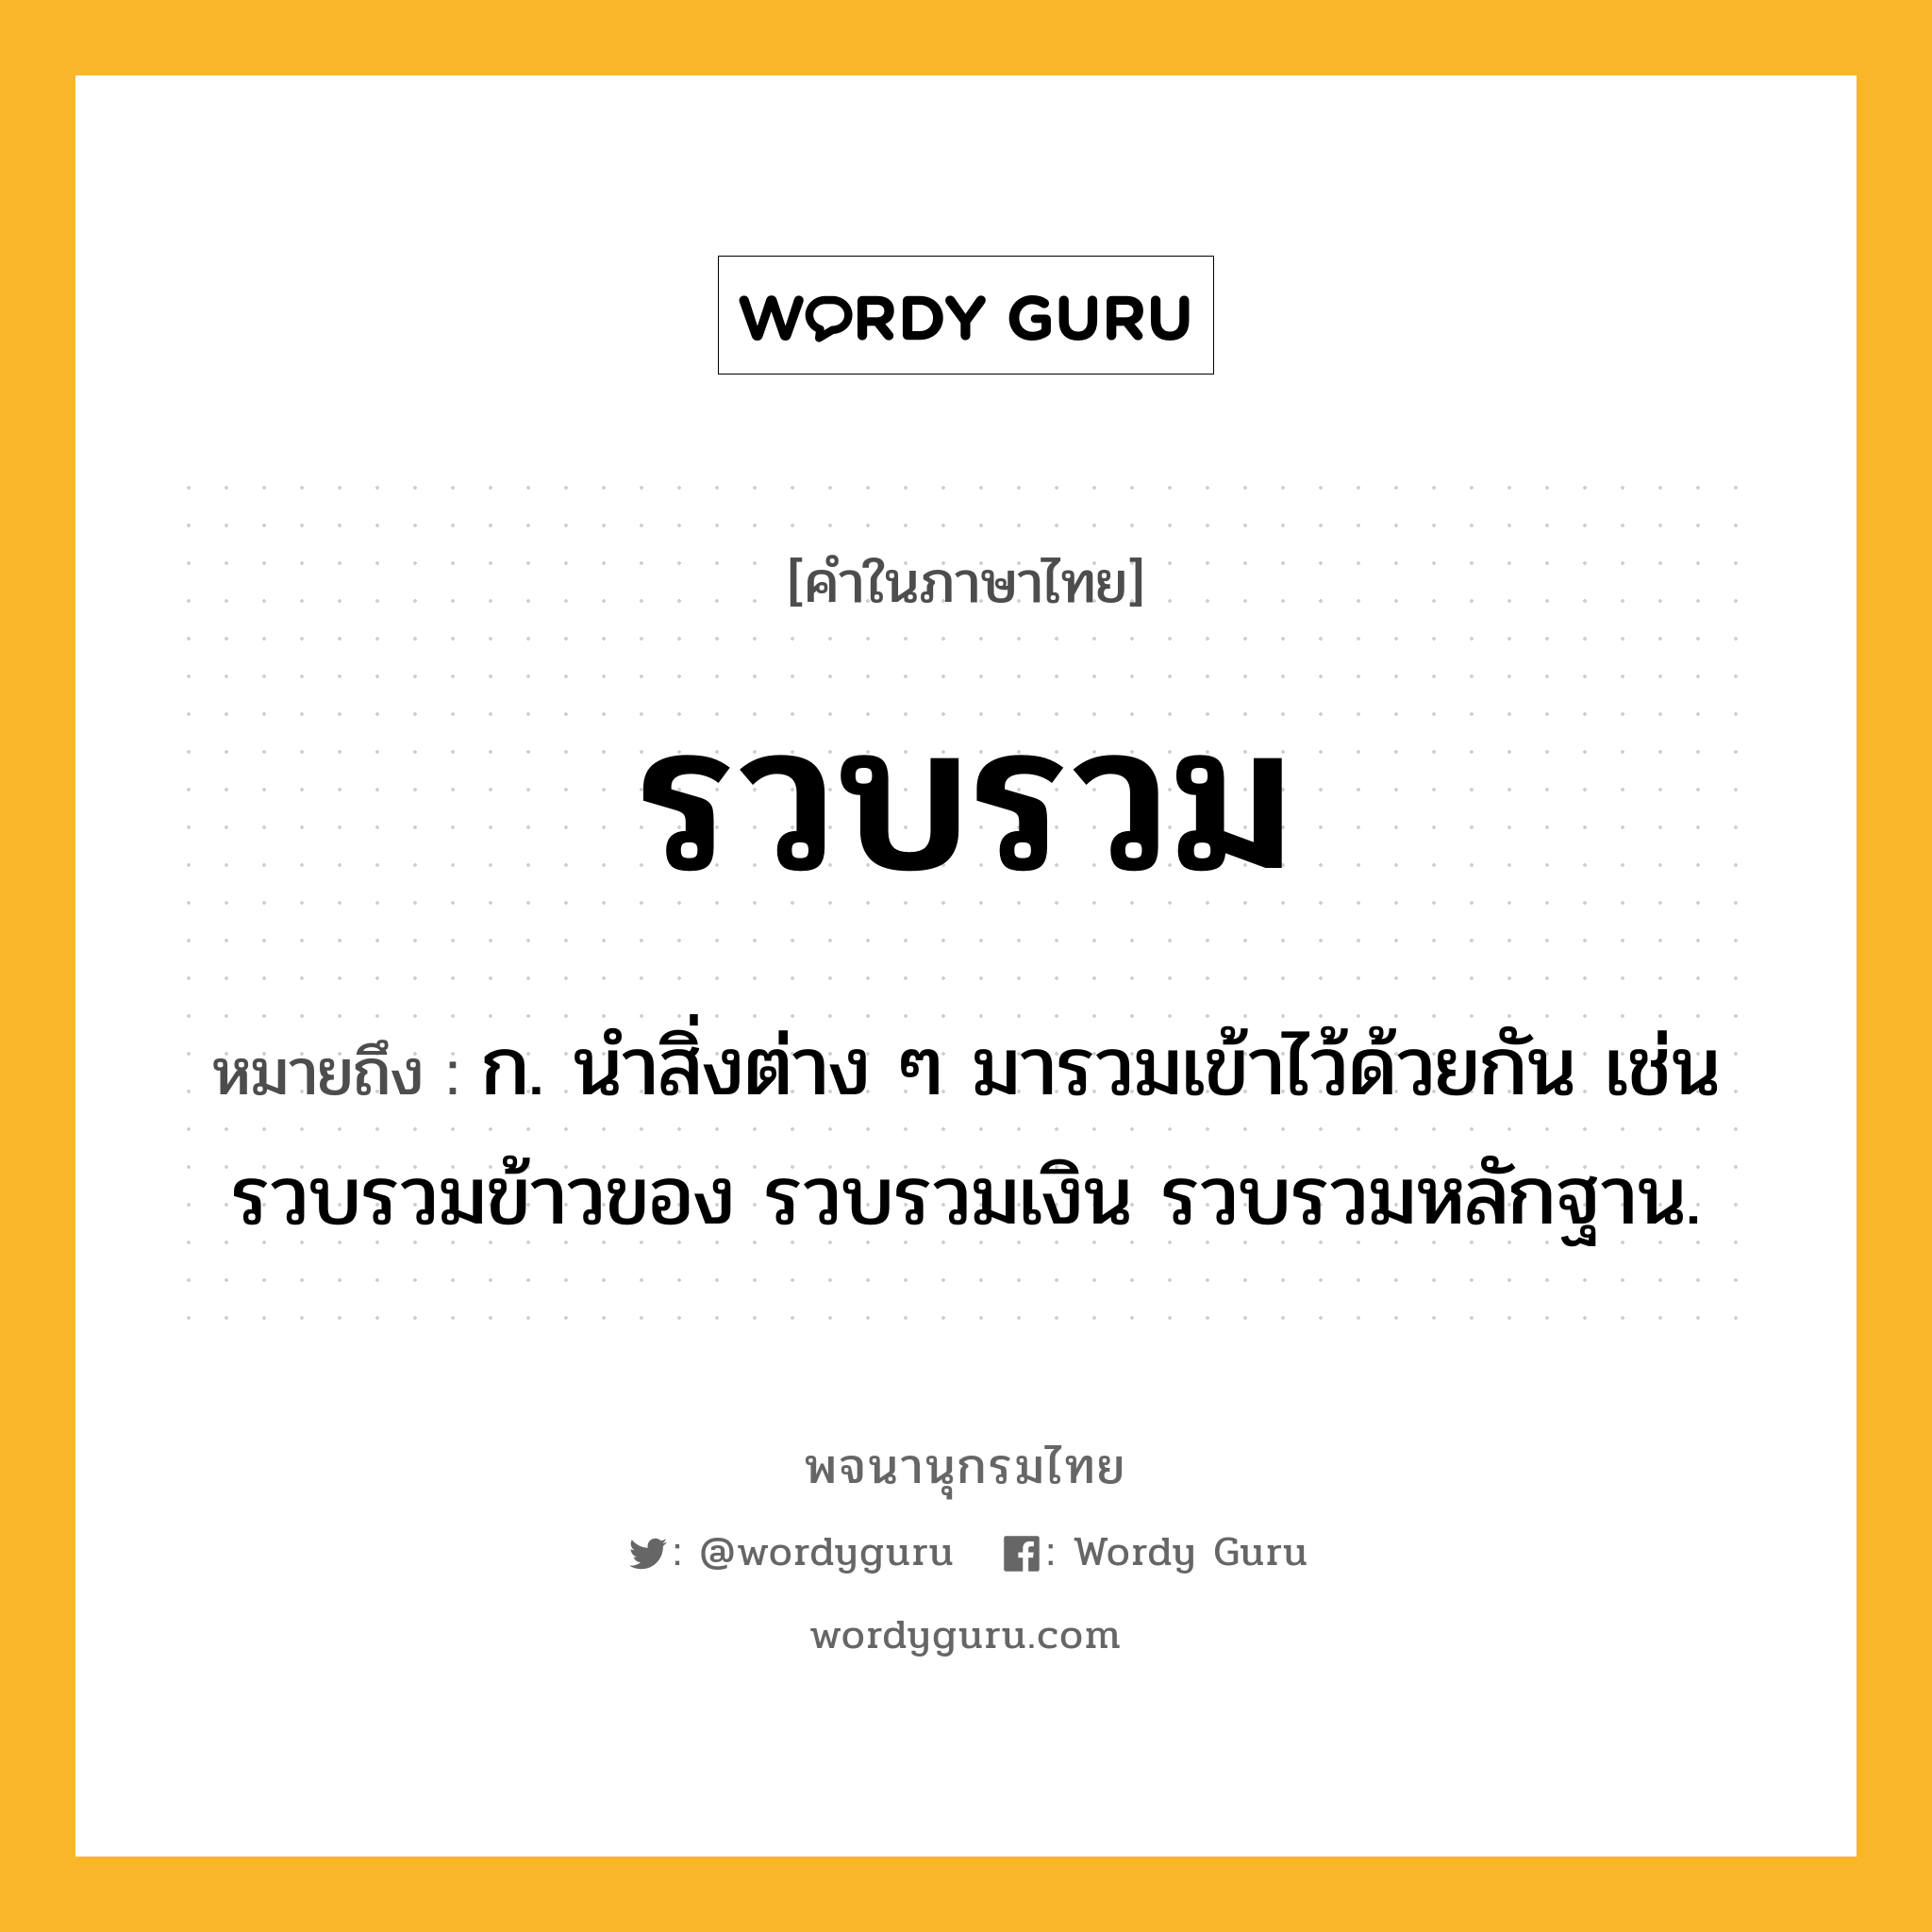 รวบรวม หมายถึงอะไร?, คำในภาษาไทย รวบรวม หมายถึง ก. นําสิ่งต่าง ๆ มารวมเข้าไว้ด้วยกัน เช่น รวบรวมข้าวของ รวบรวมเงิน รวบรวมหลักฐาน.